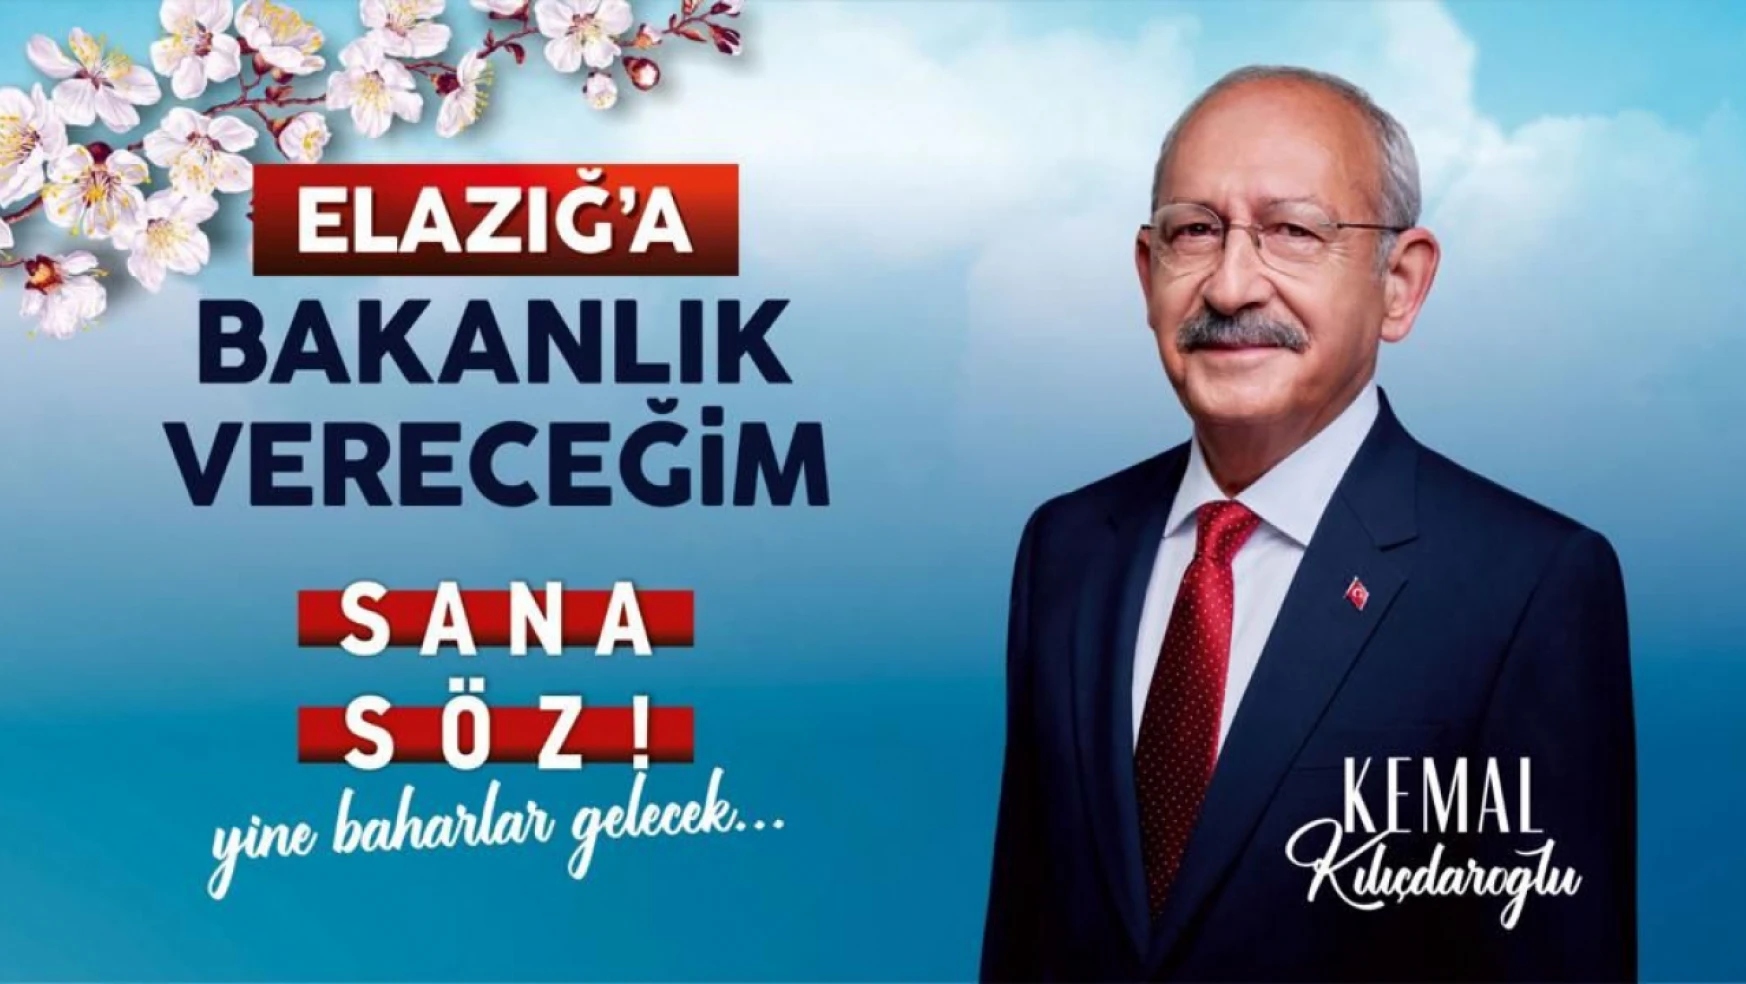 CHP Genel Başkanı Kılıçdaroğlu, Elazığ'a Bakanlık vereceğim